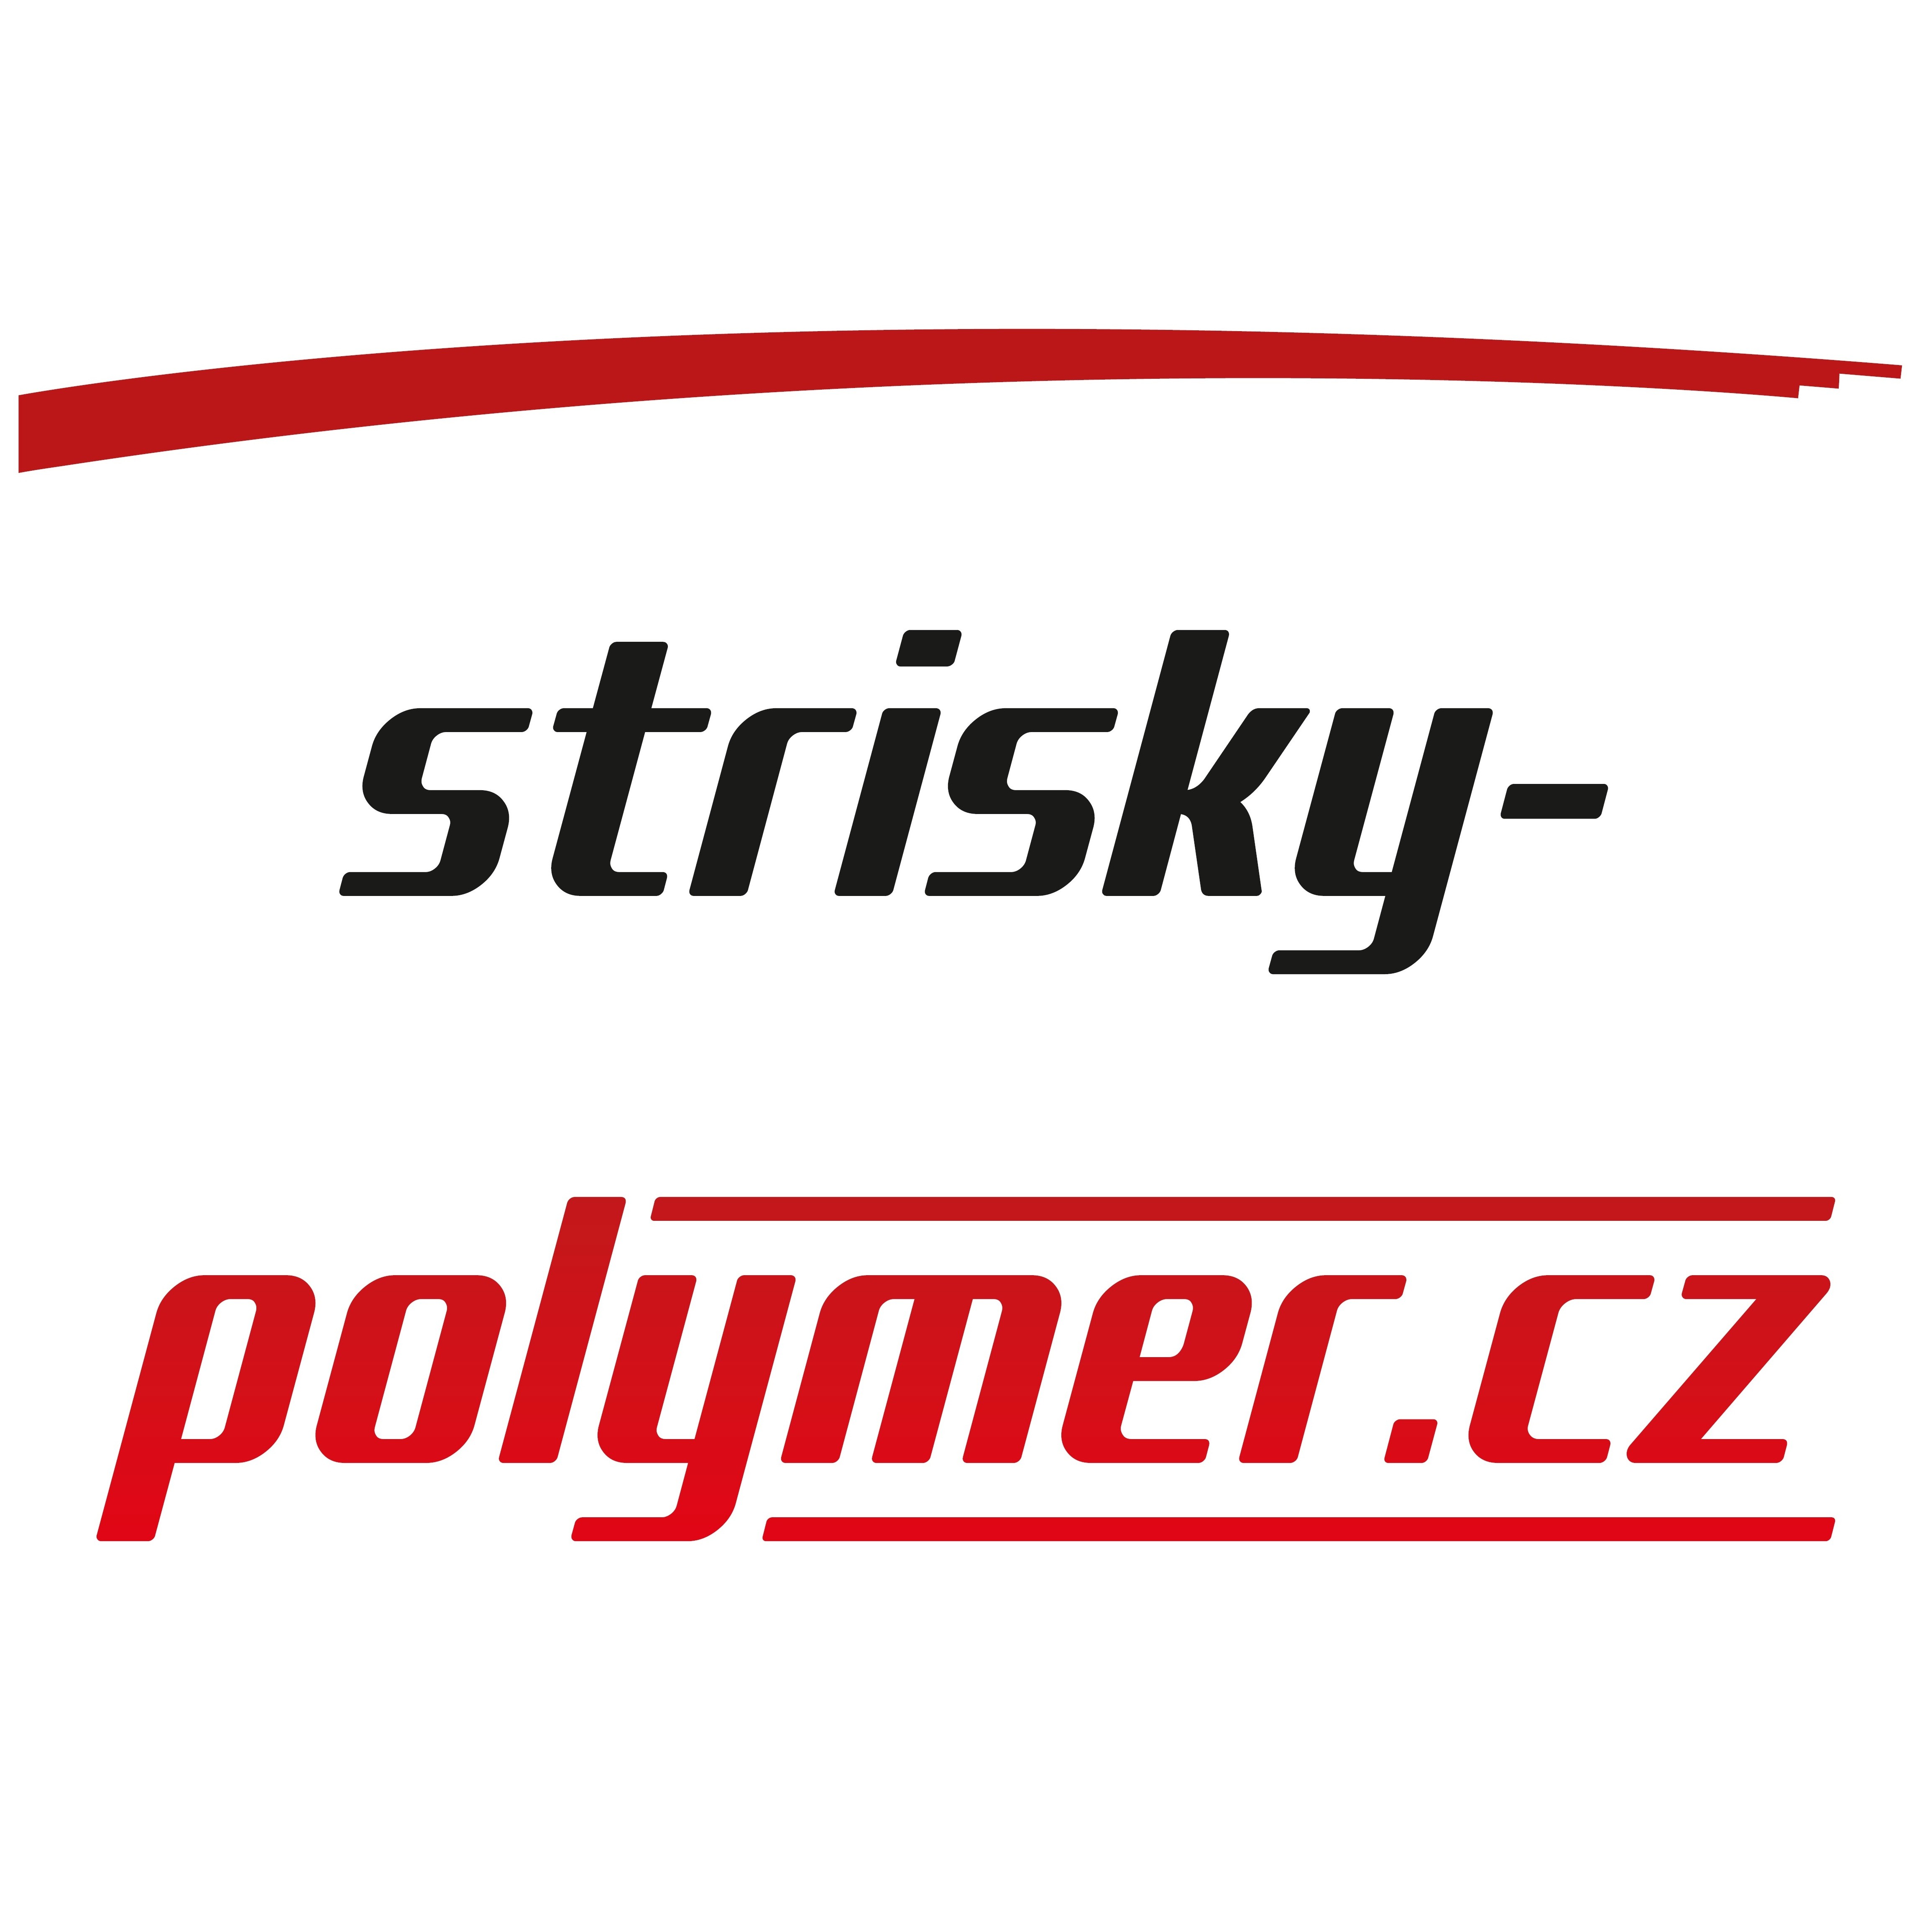 strisky-polymer.cz